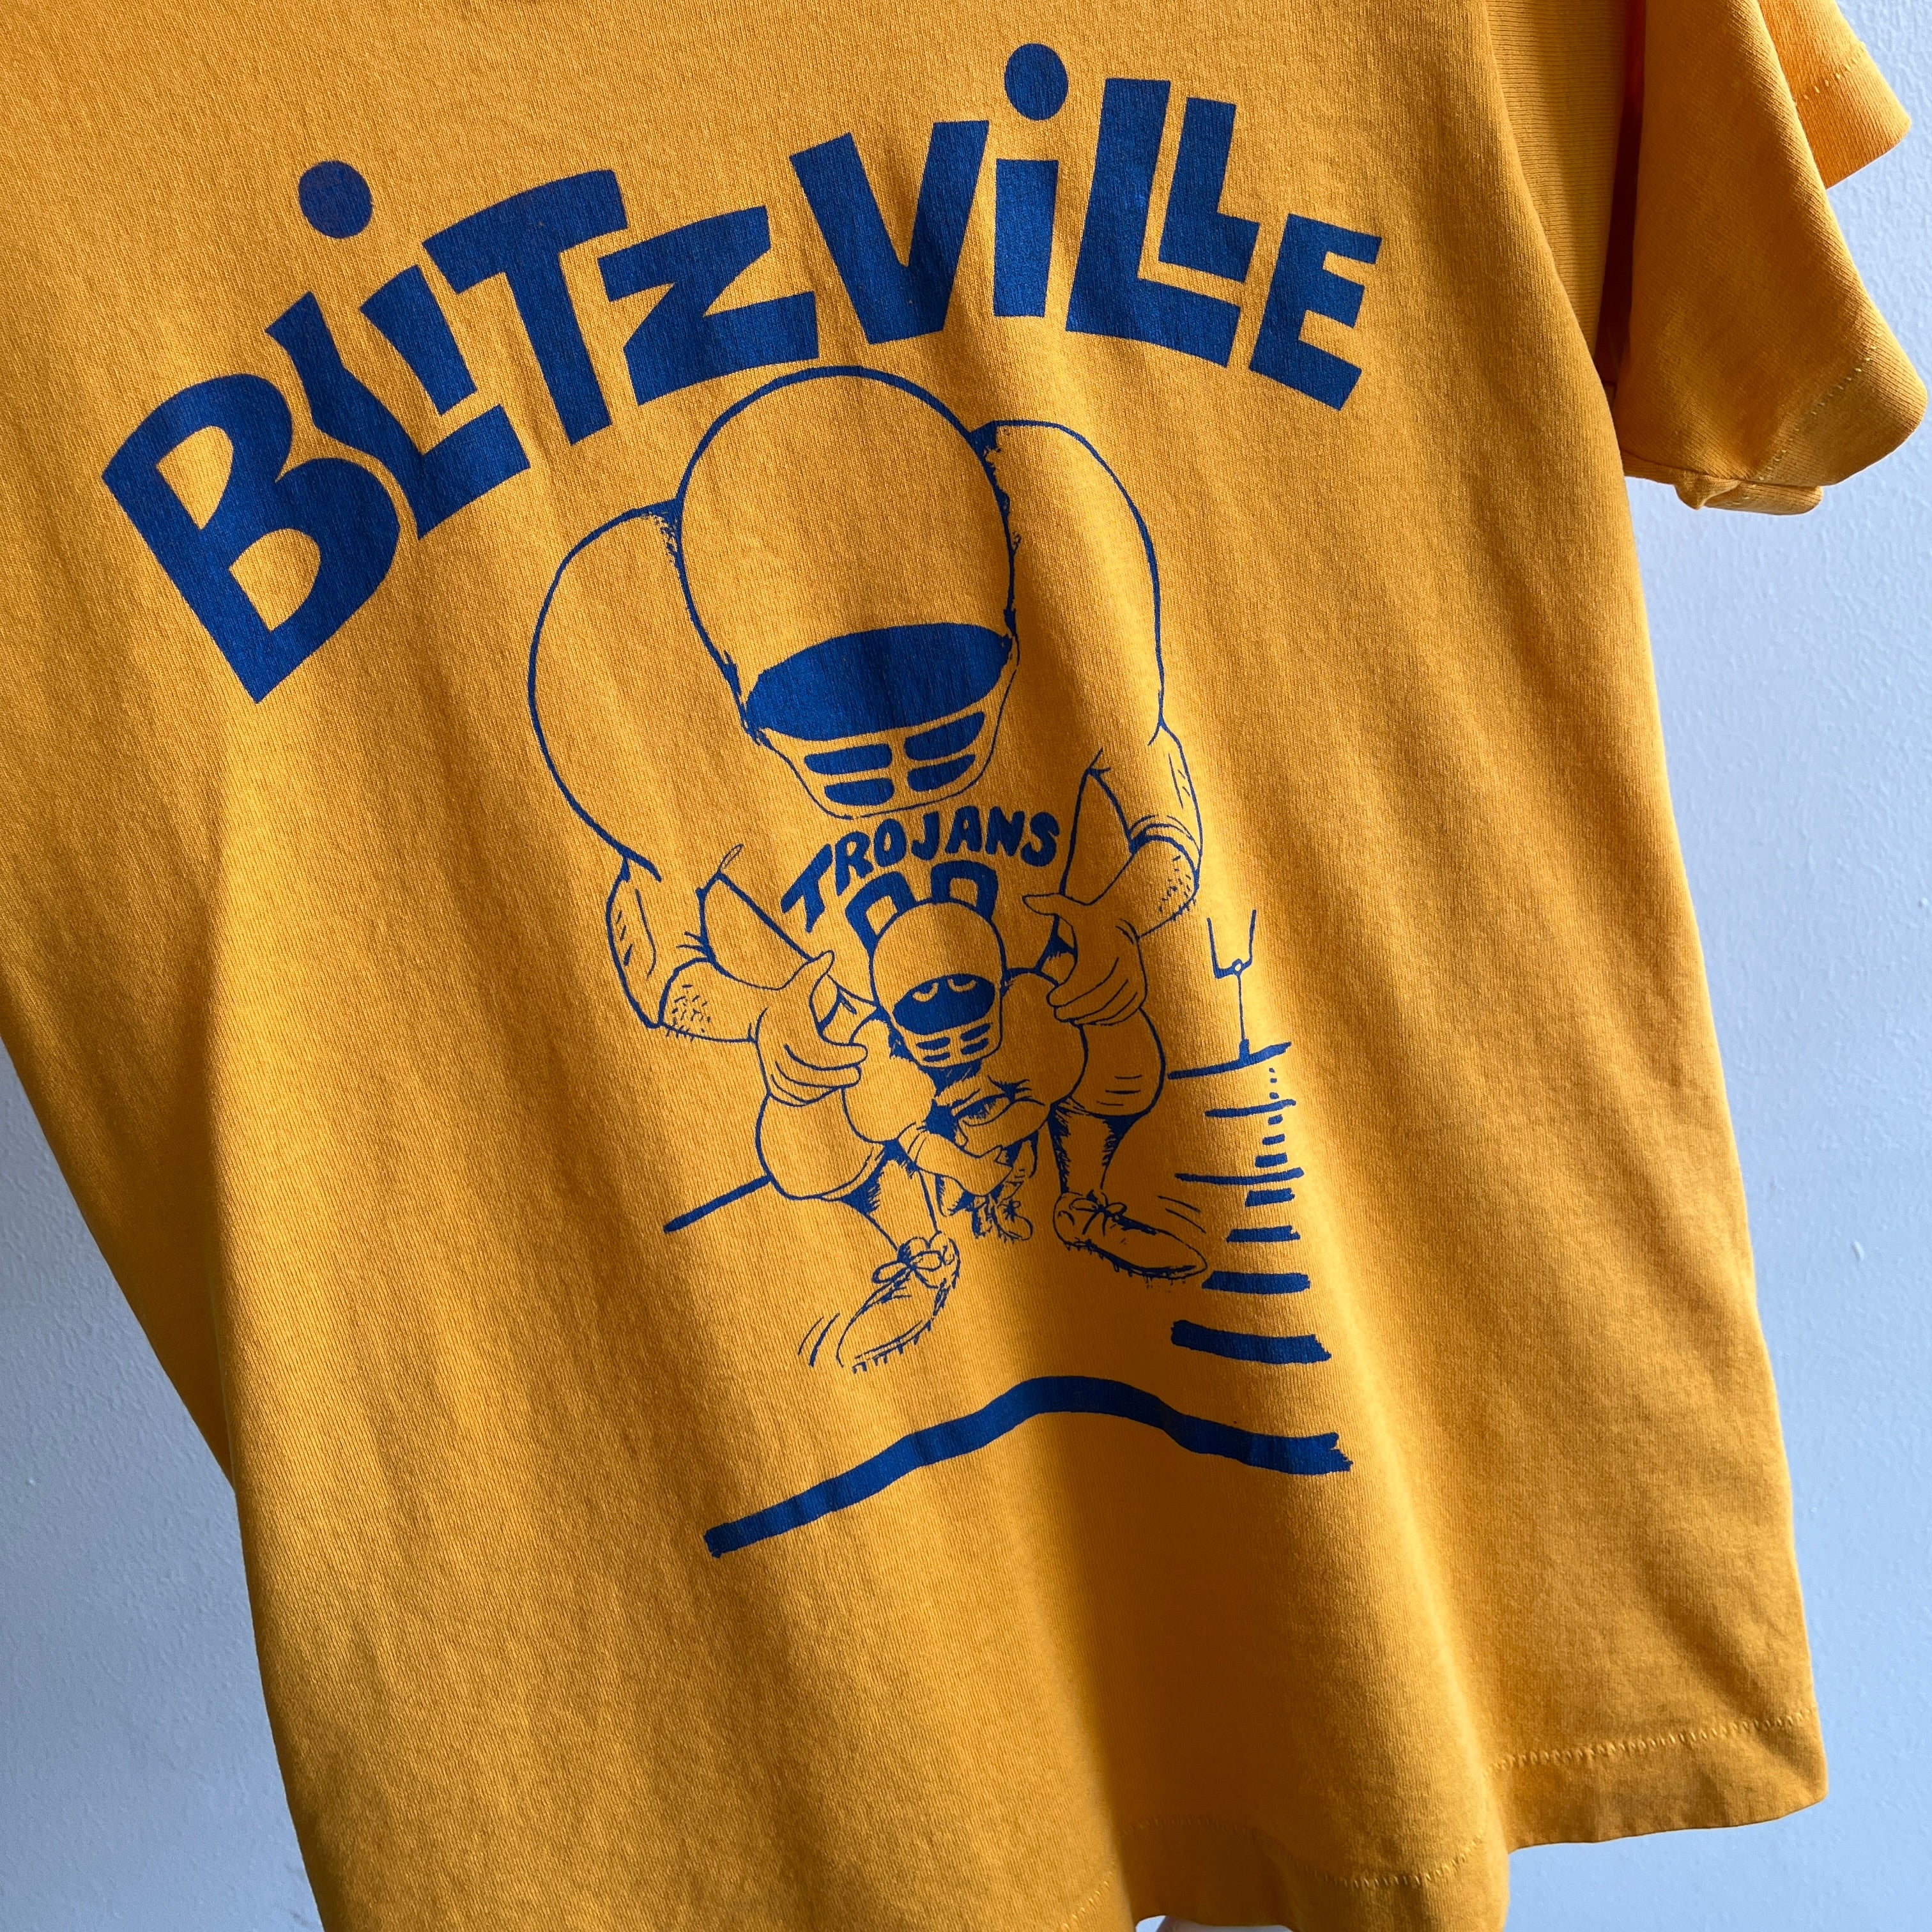 Blitzville Trojans Football des années 1990 T-shirt graphique